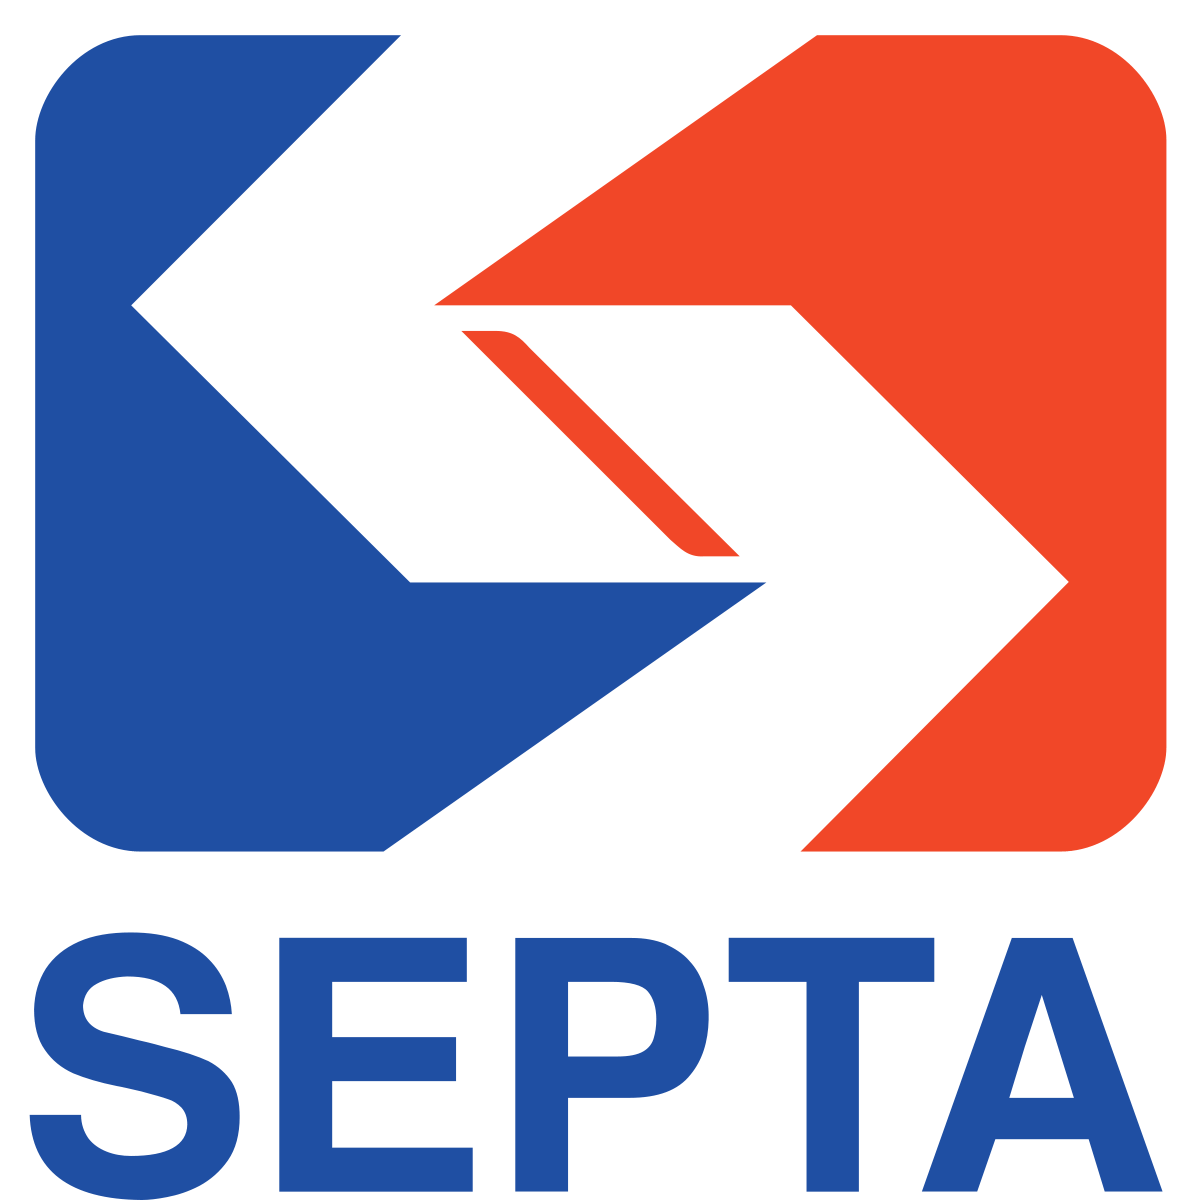 SEPTA Logo - SEPTA